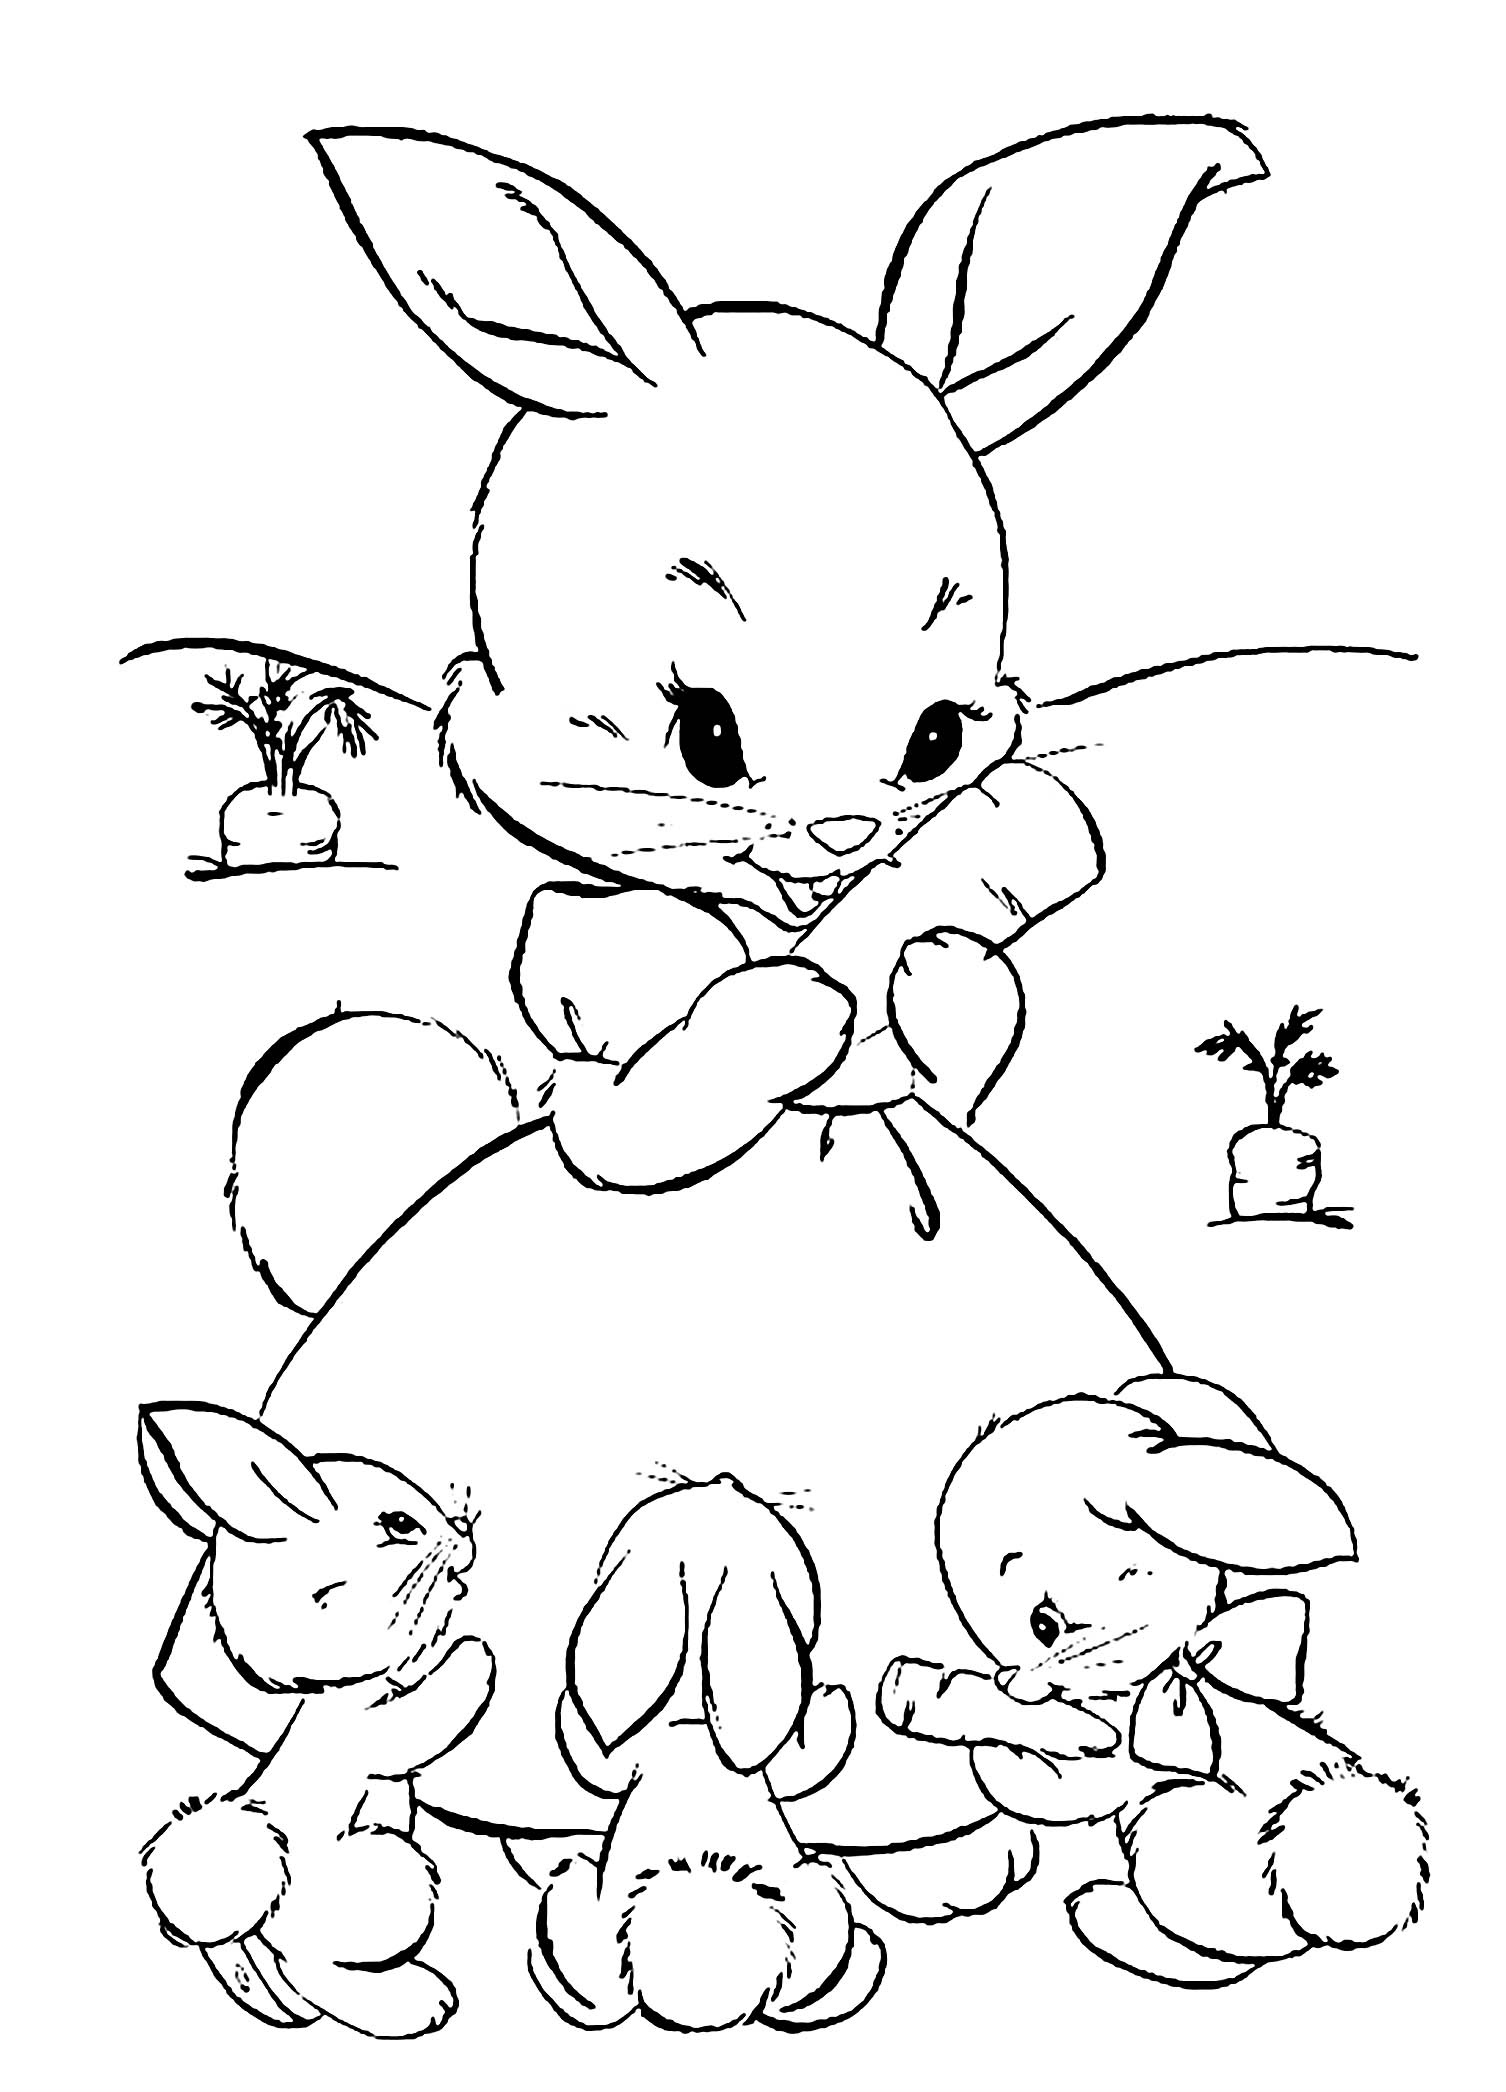 Tranh tô màu công chúa thỏ và ba chú thỏ con